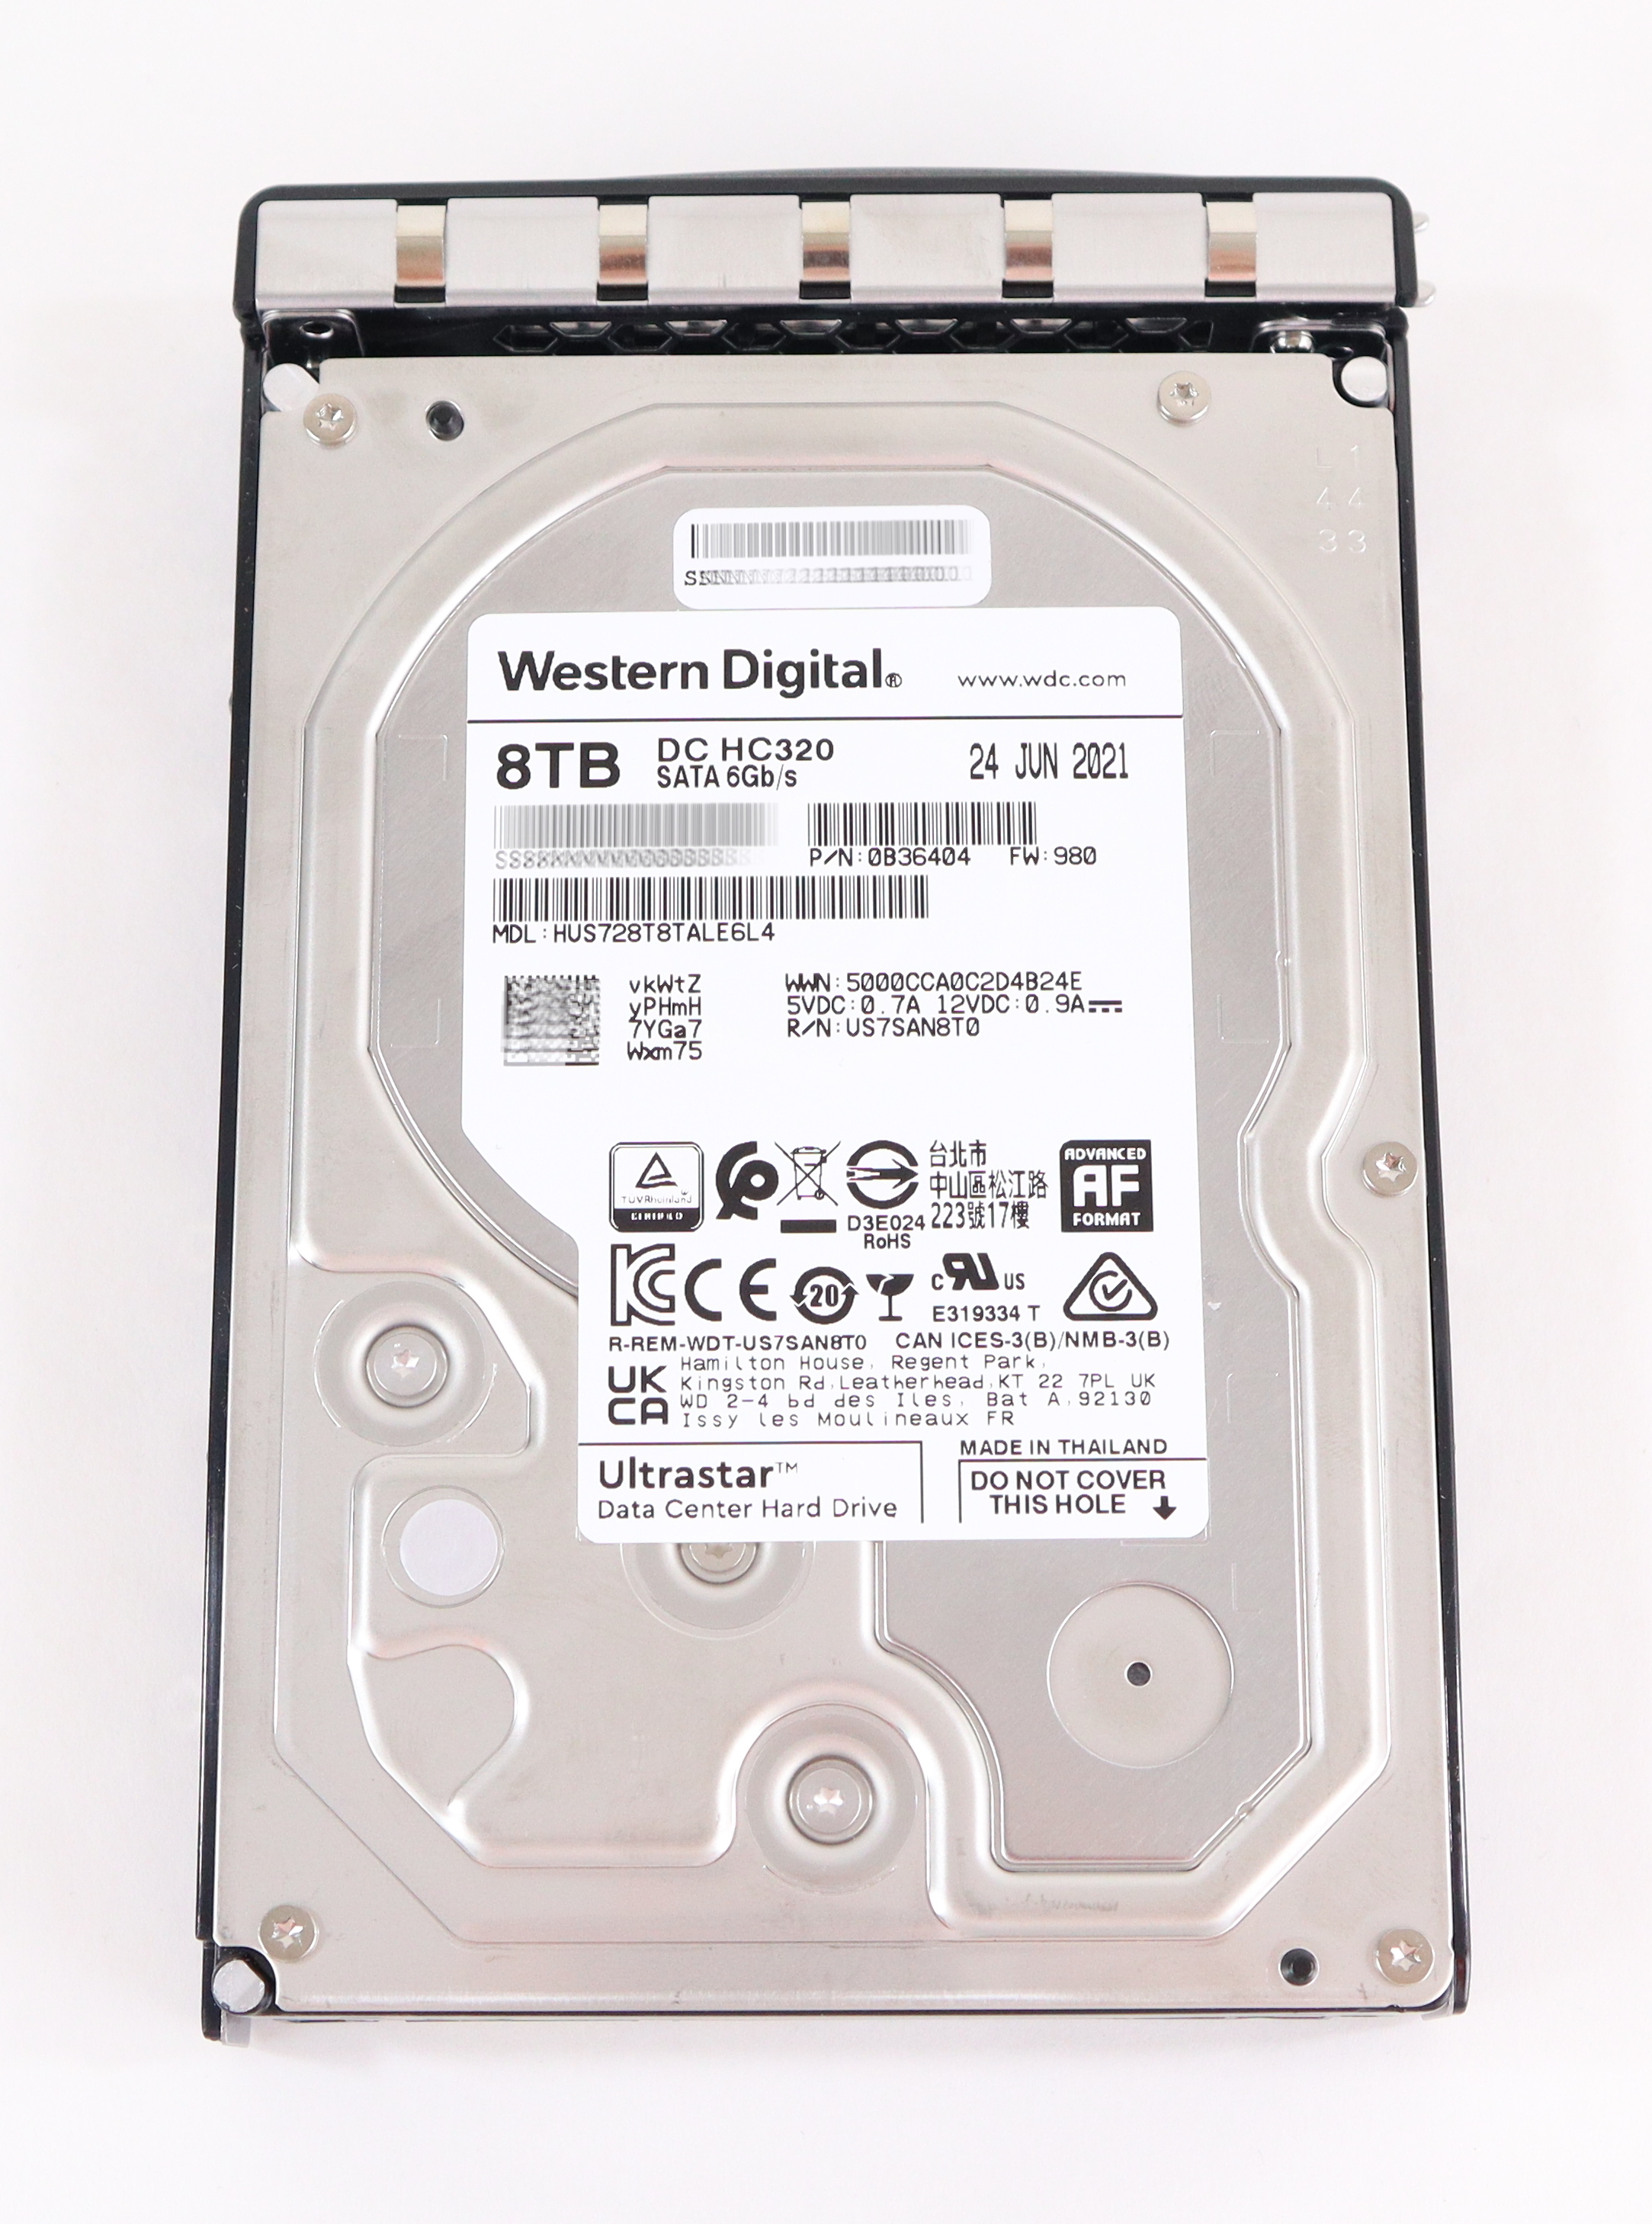 Western Digital Ultrastar 8TB HC320 HUS728T8TALE6L4 7.2K RPM SATA 6Gb/s 0B36404 - Click Image to Close